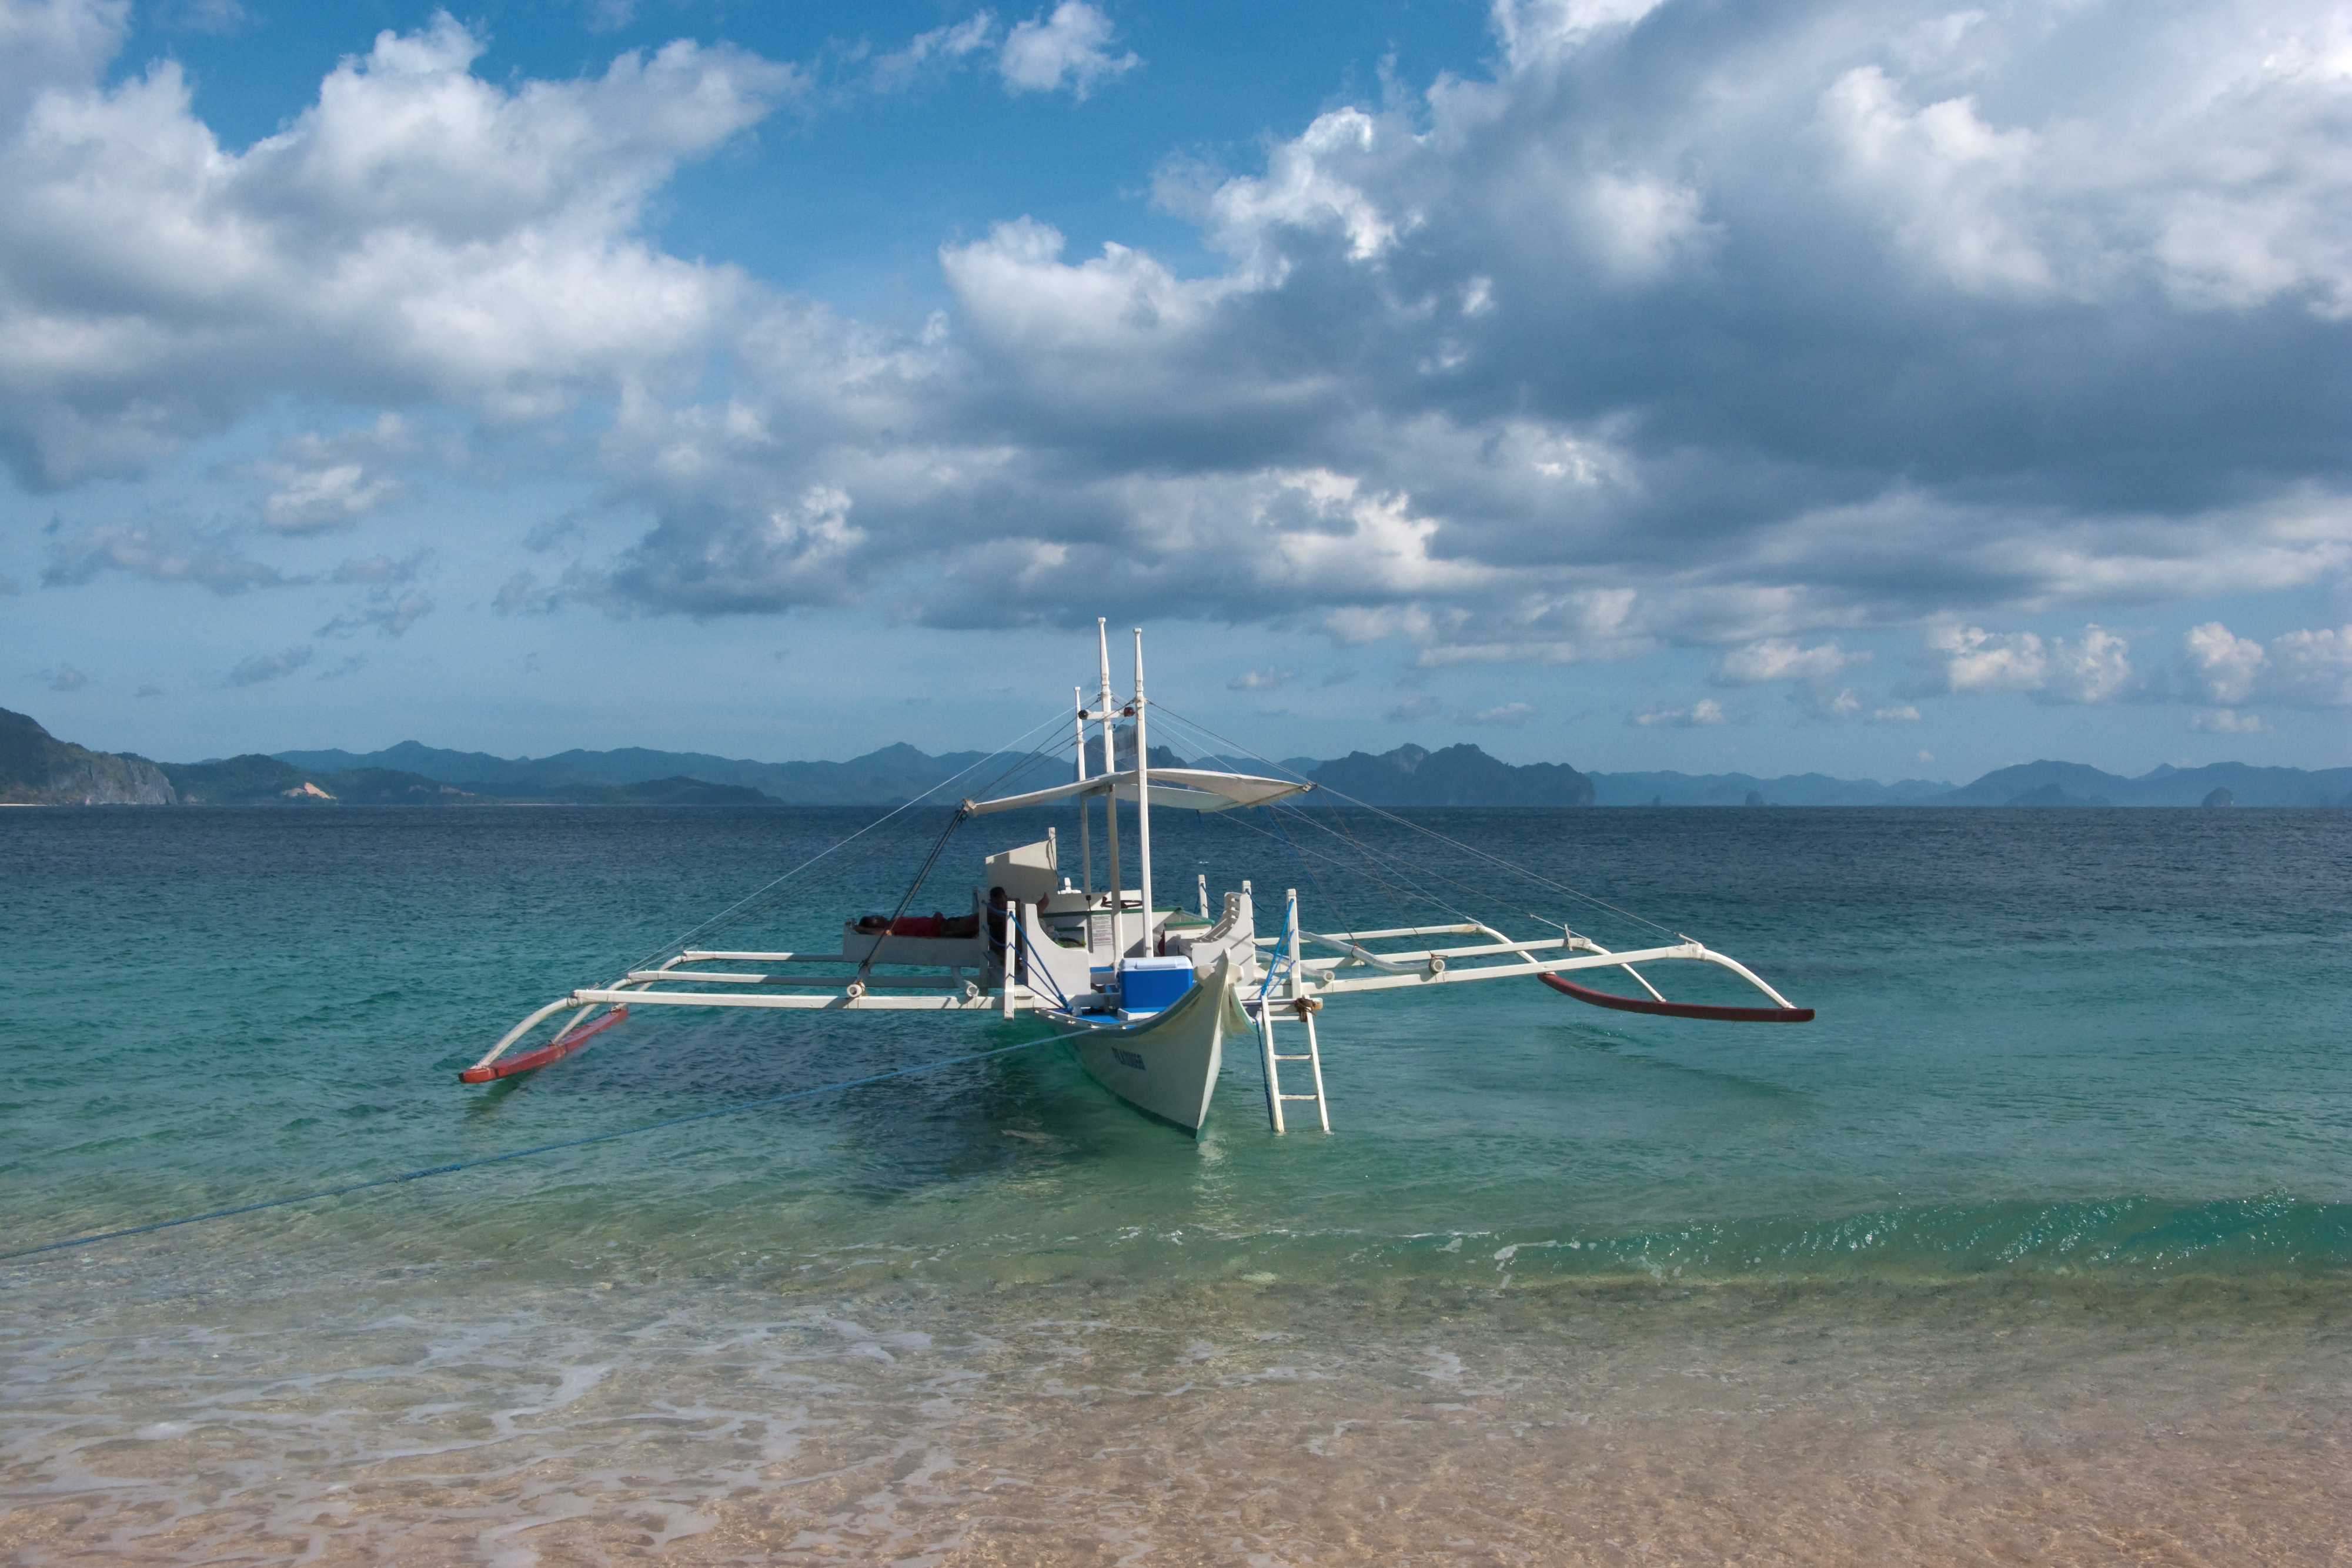 File:Traditional Philippines fishing boat, bangka, banca, El Nido